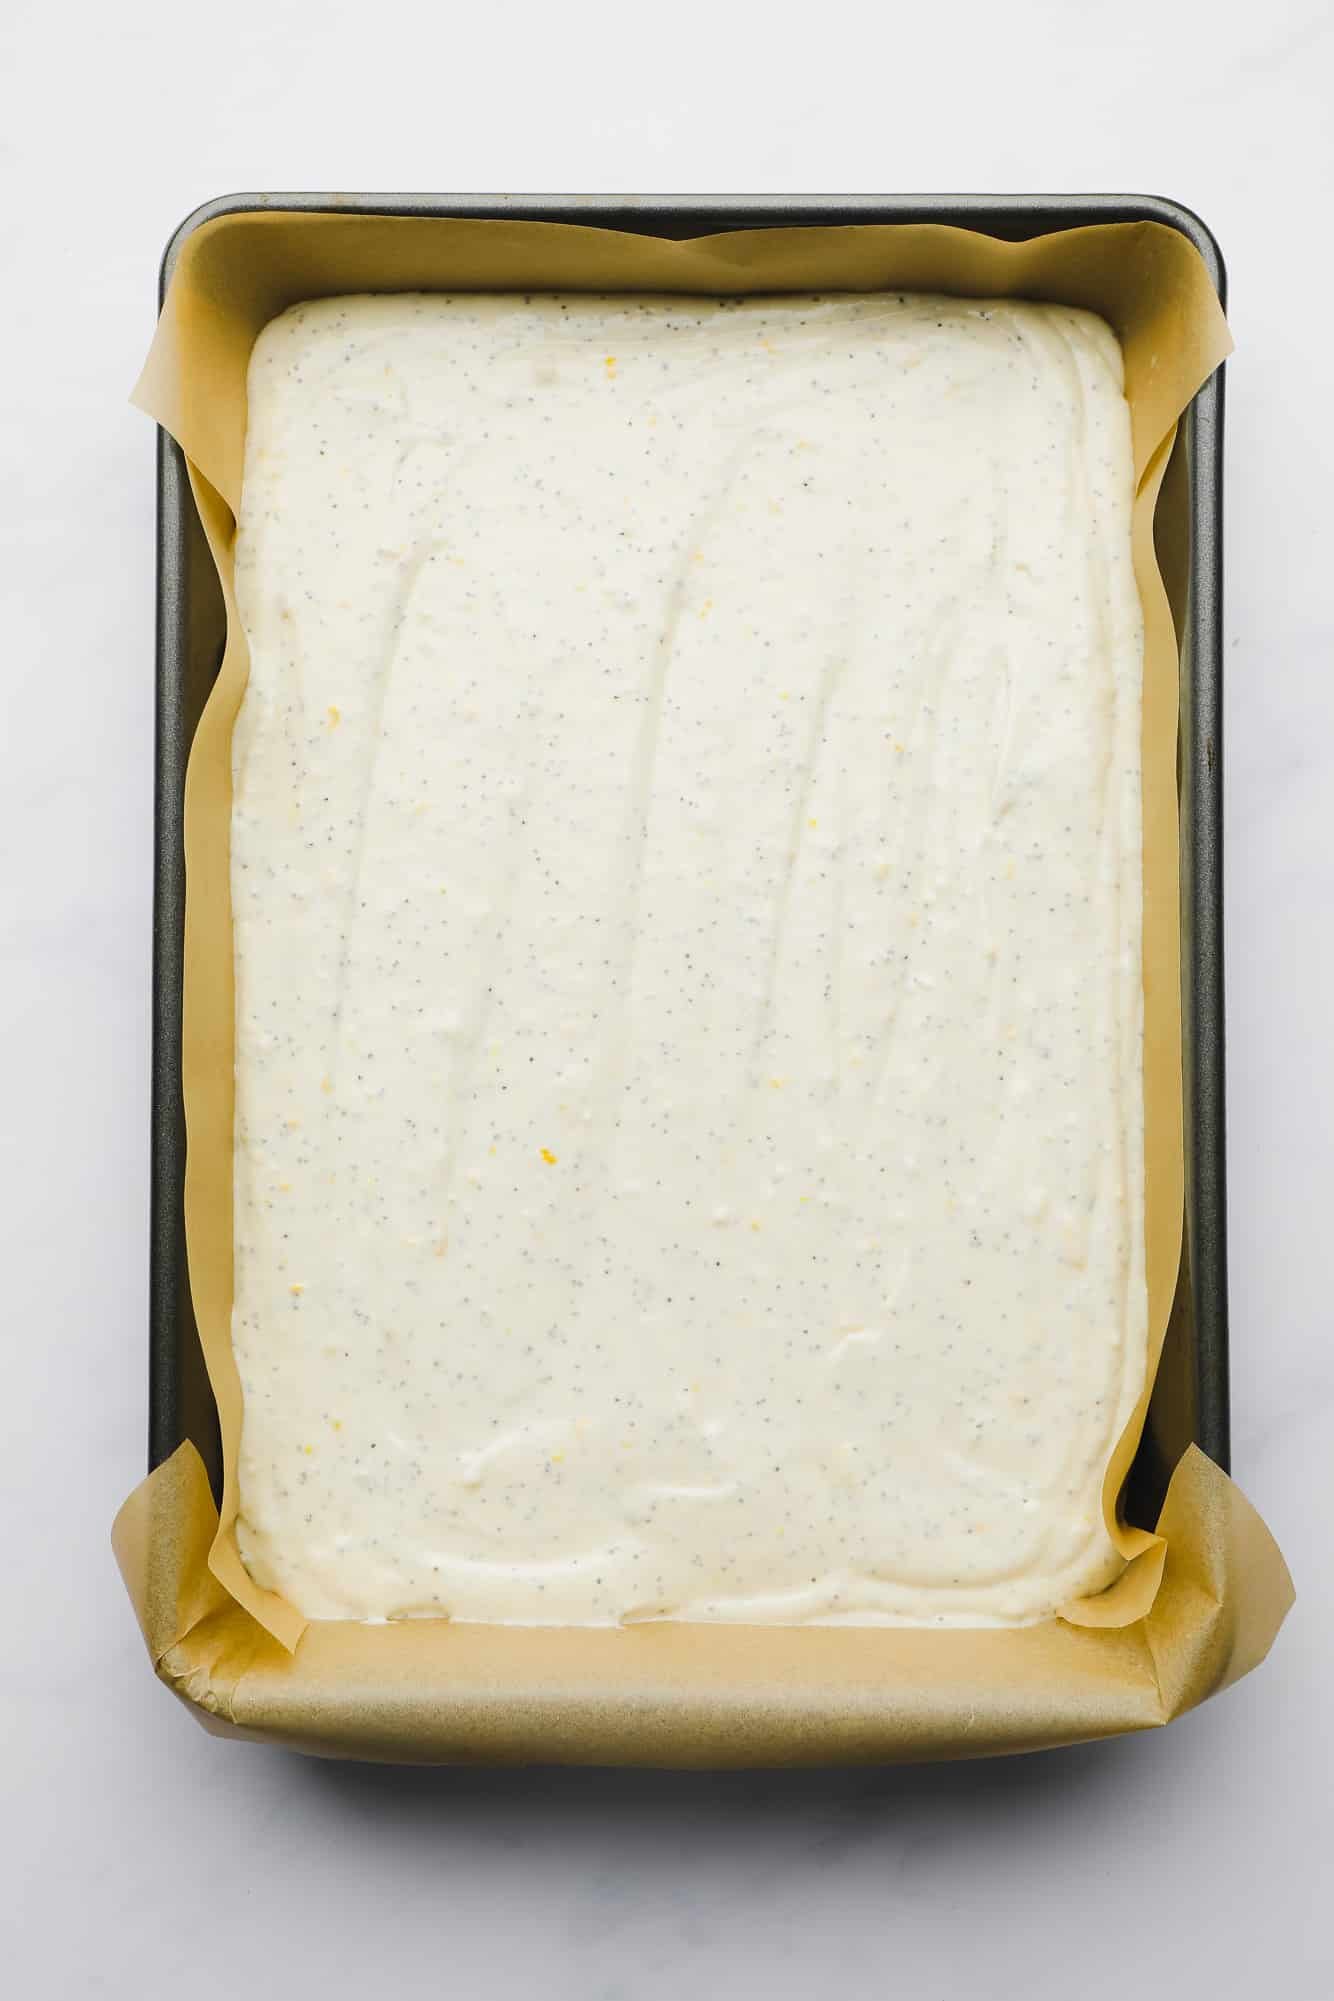 vegan lemon poppyseed cake batter in a large rectangular pan.